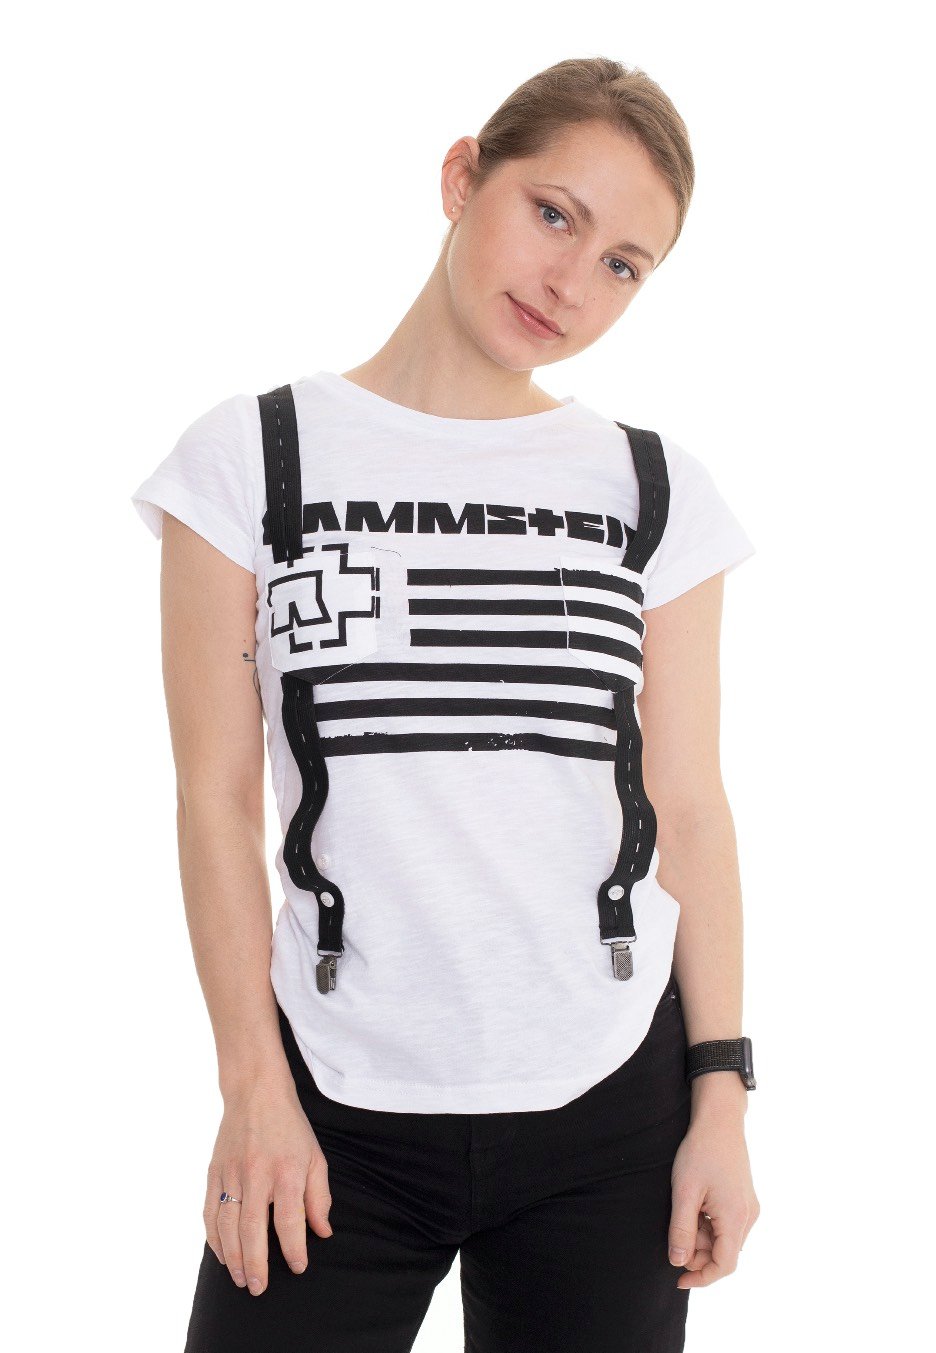 Rammstein - Suspender White - Girly